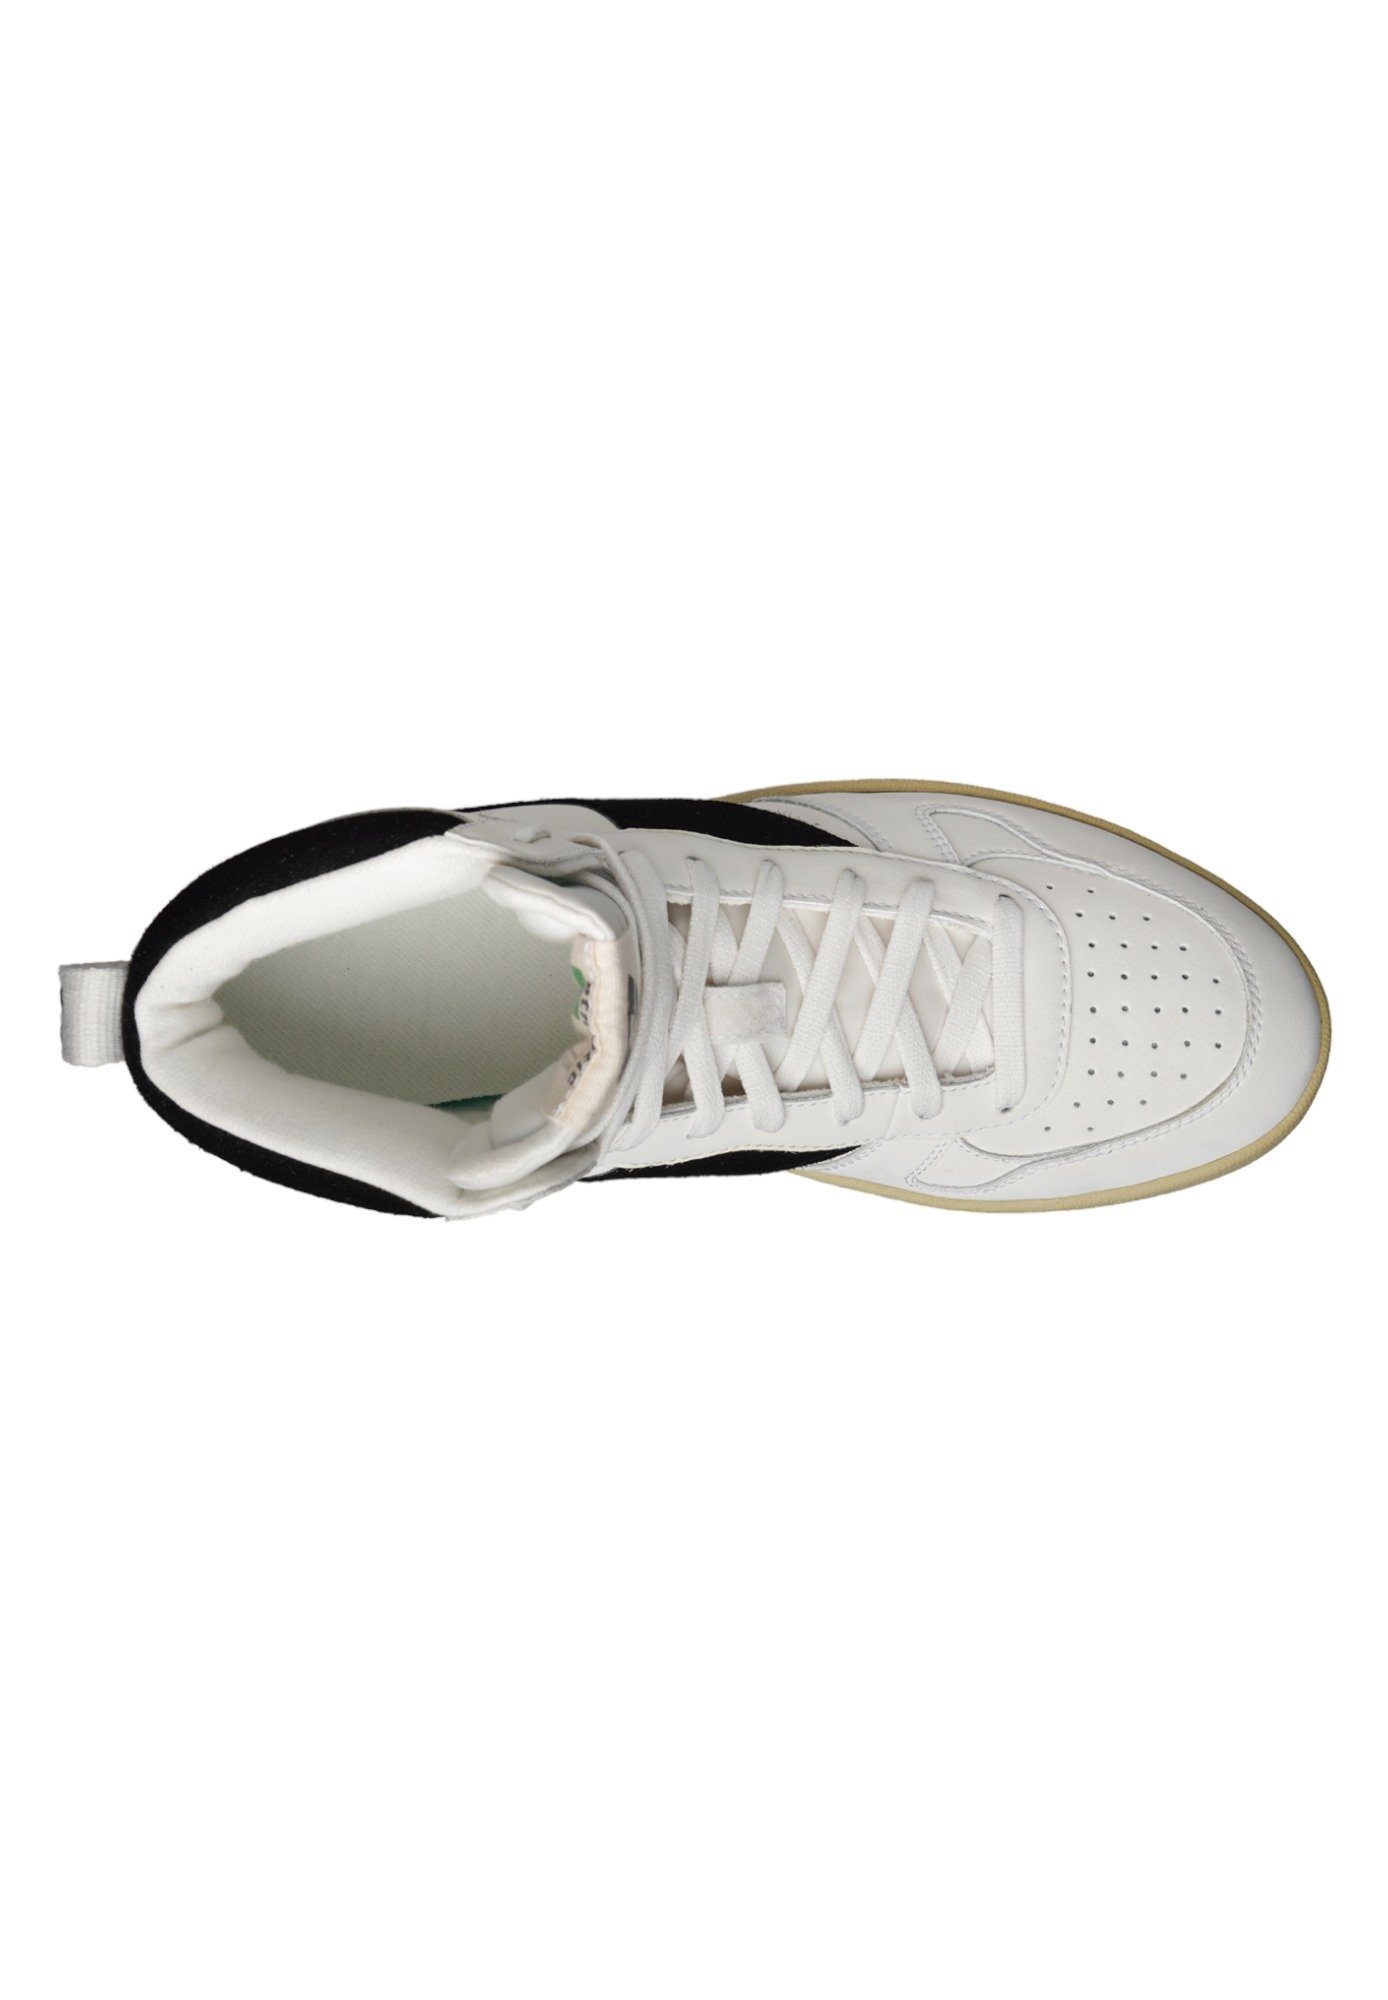 White recycled Jet - Produkt Carl Black Chalk Sneaker ETHLETIC